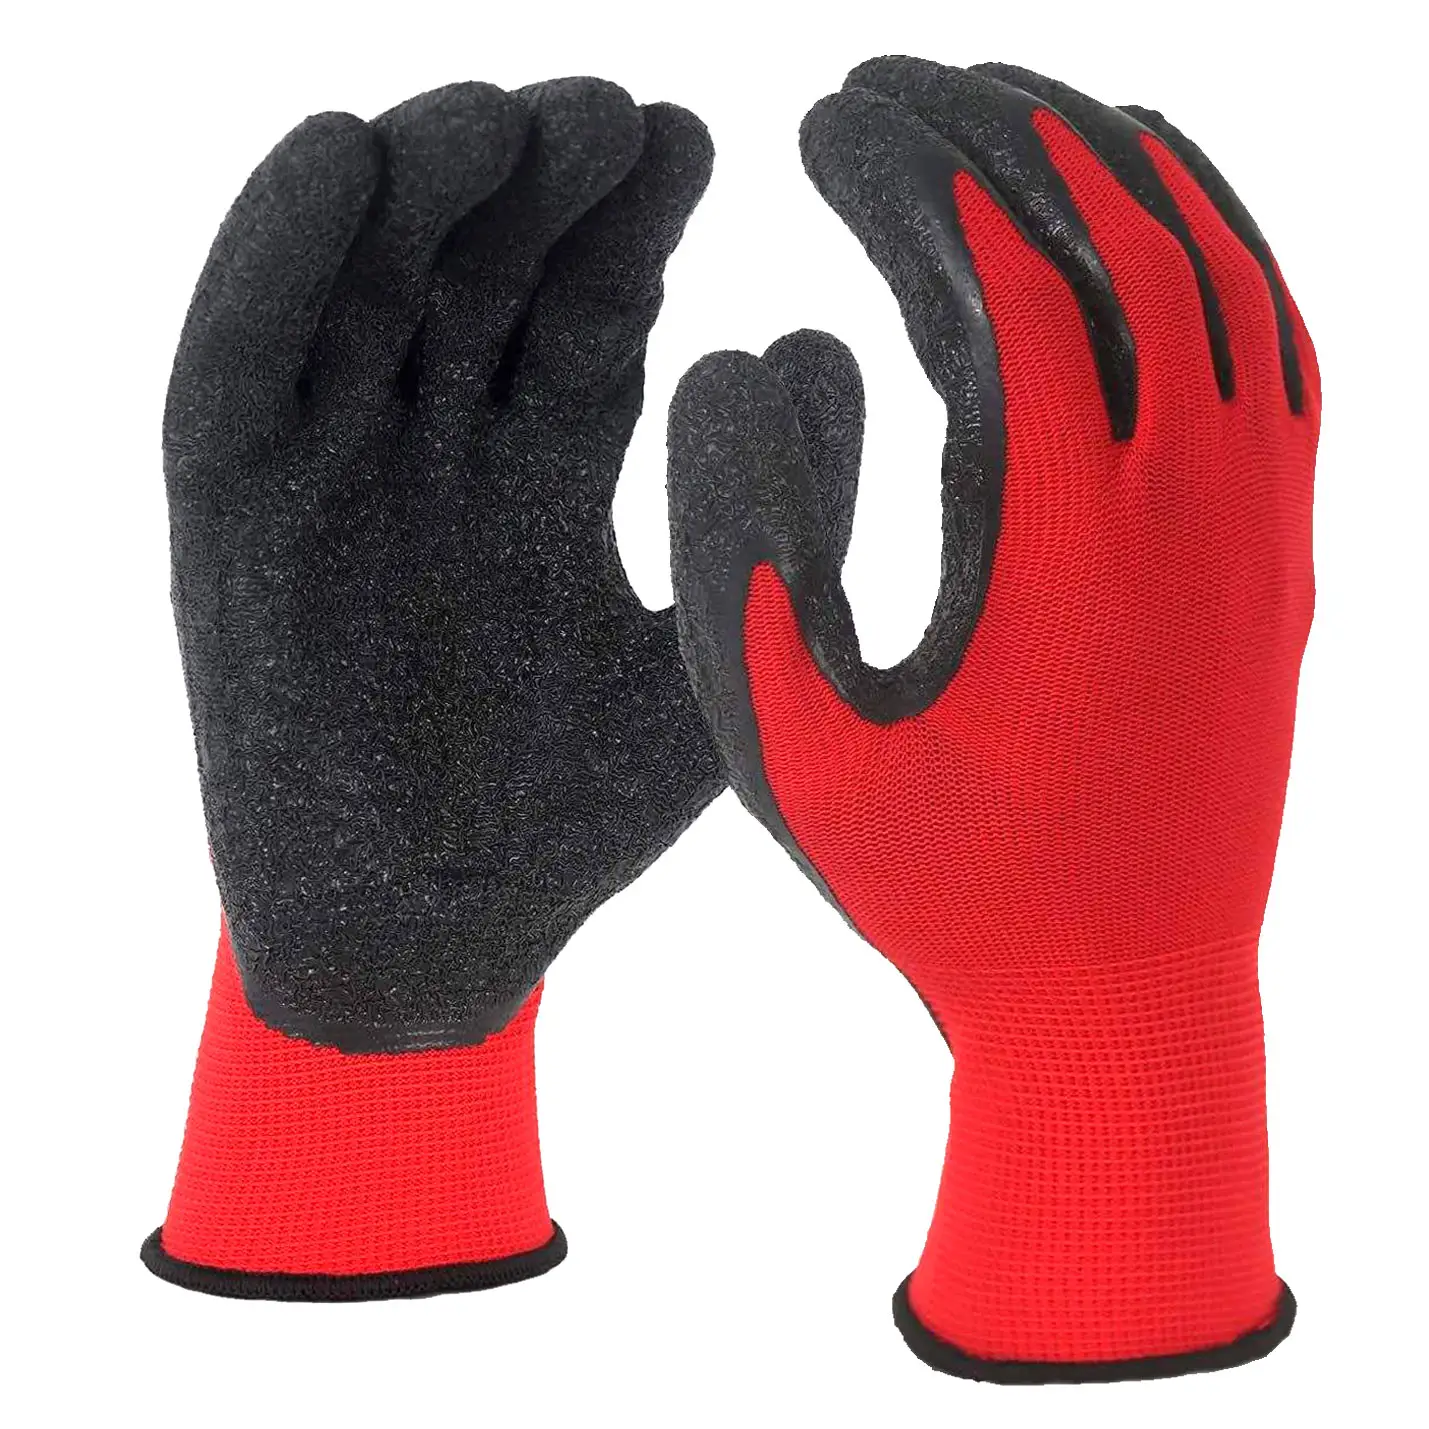 Fabrika özel endüstriyel mekanik guantes de trabajo bahçe güvenlik eller işçi lateks eldiven çalışmak için